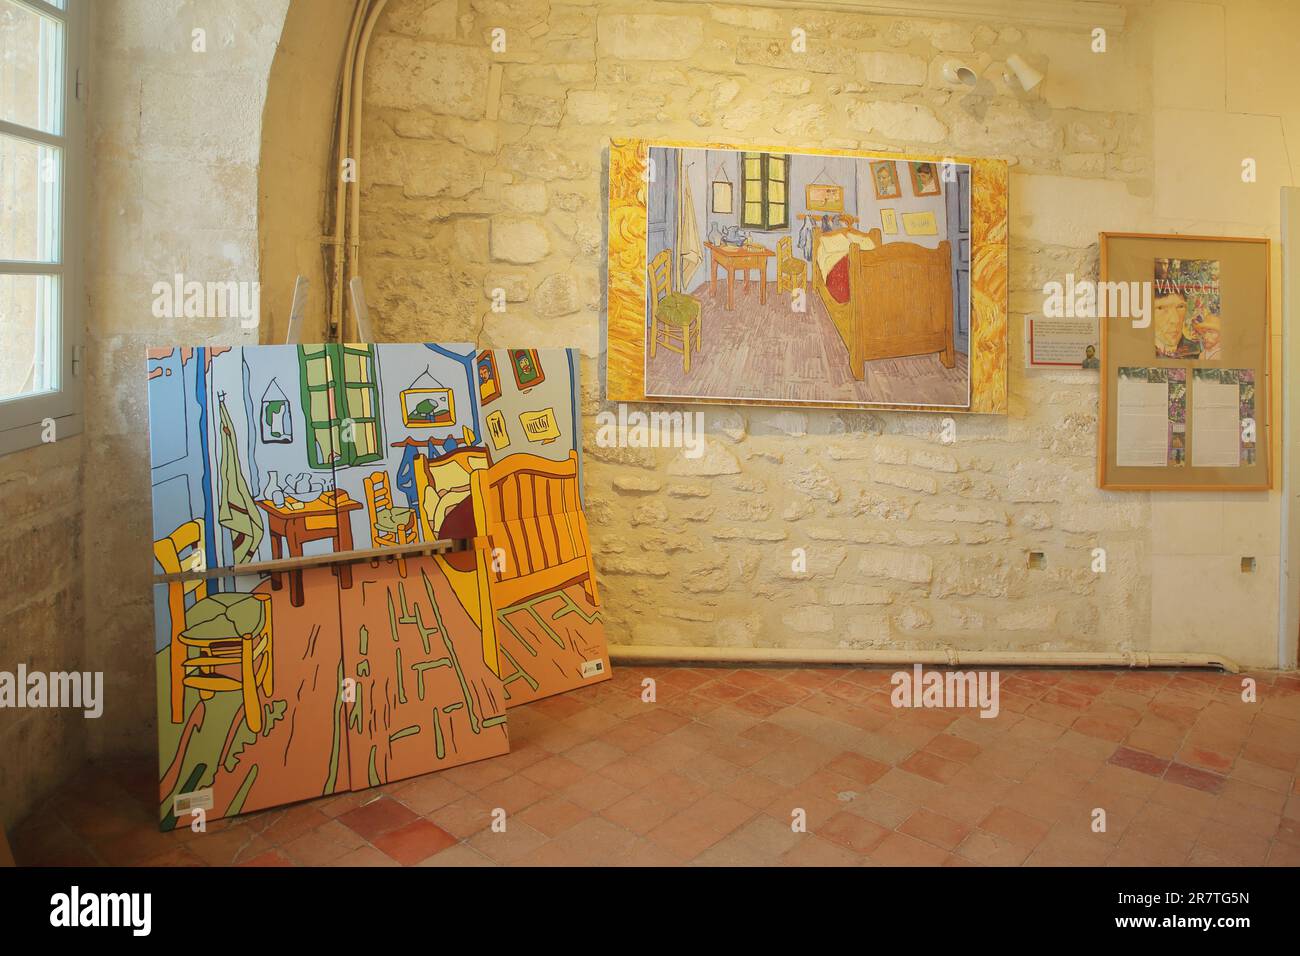 Musée Circut van Gogh avec reproduction de peintures de Vincent van Gogh, Saint-Paul-de-Mausole, St, Saint-Rémy-de-Provence, Provence, Alpilles Banque D'Images